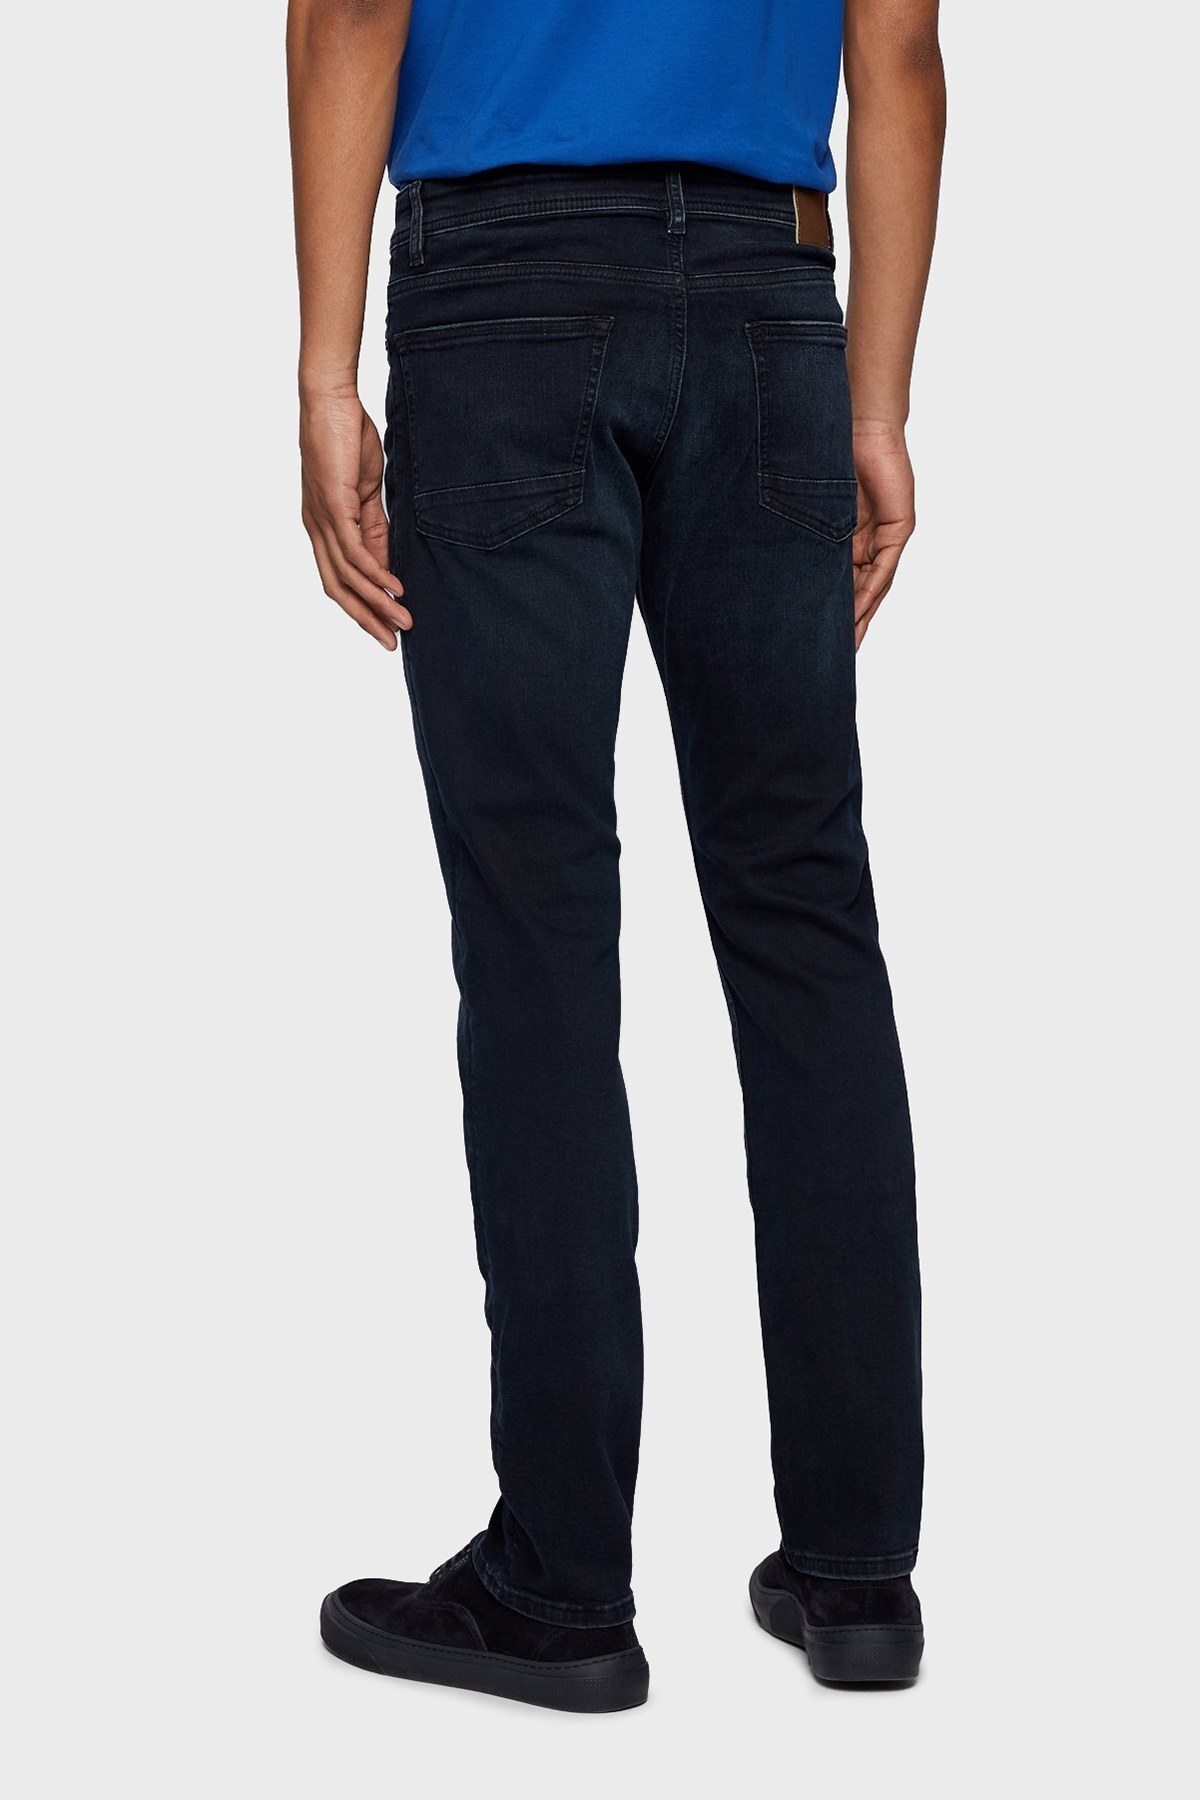 Hugo Boss Slim Fit Cepli Pamuklu Jeans Erkek Kot Pantolon 50453250 403 LACİVERT